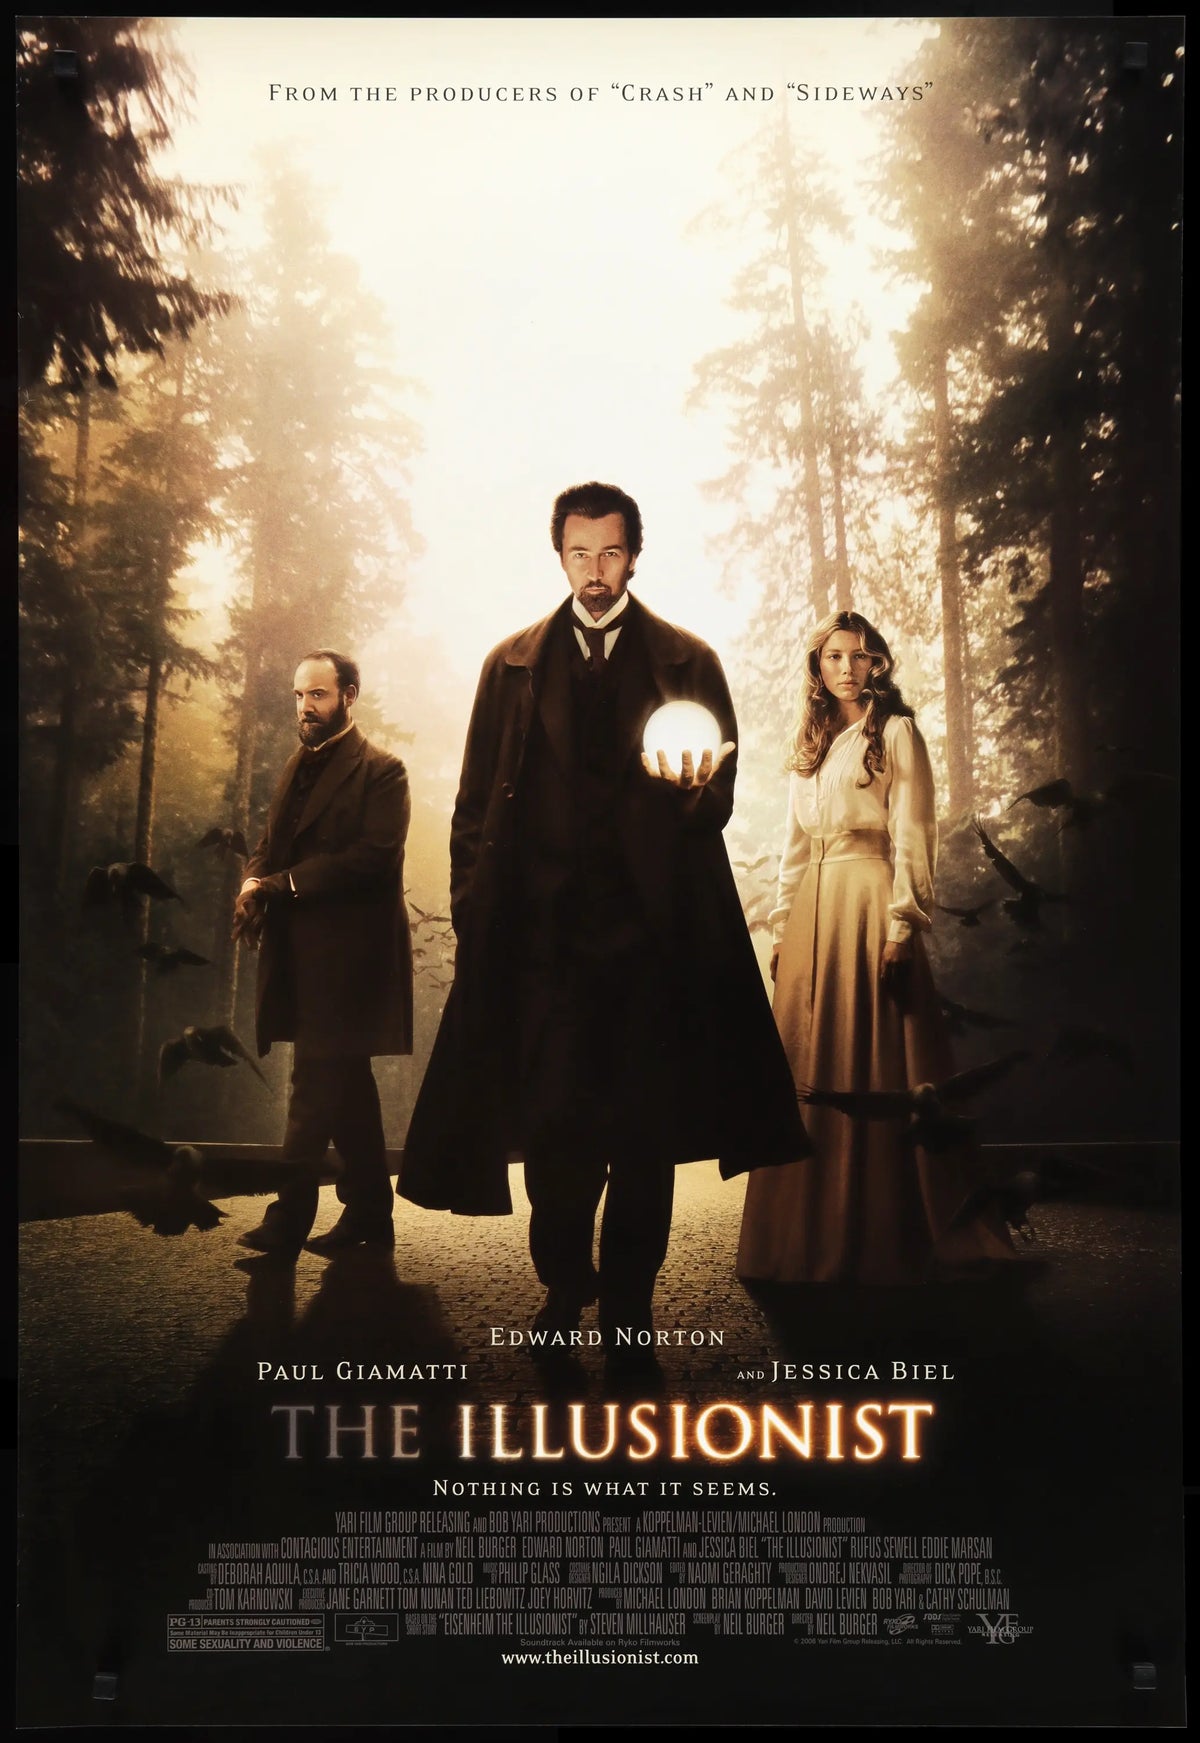 Illusionist (2006) original movie poster for sale at Original Film Art